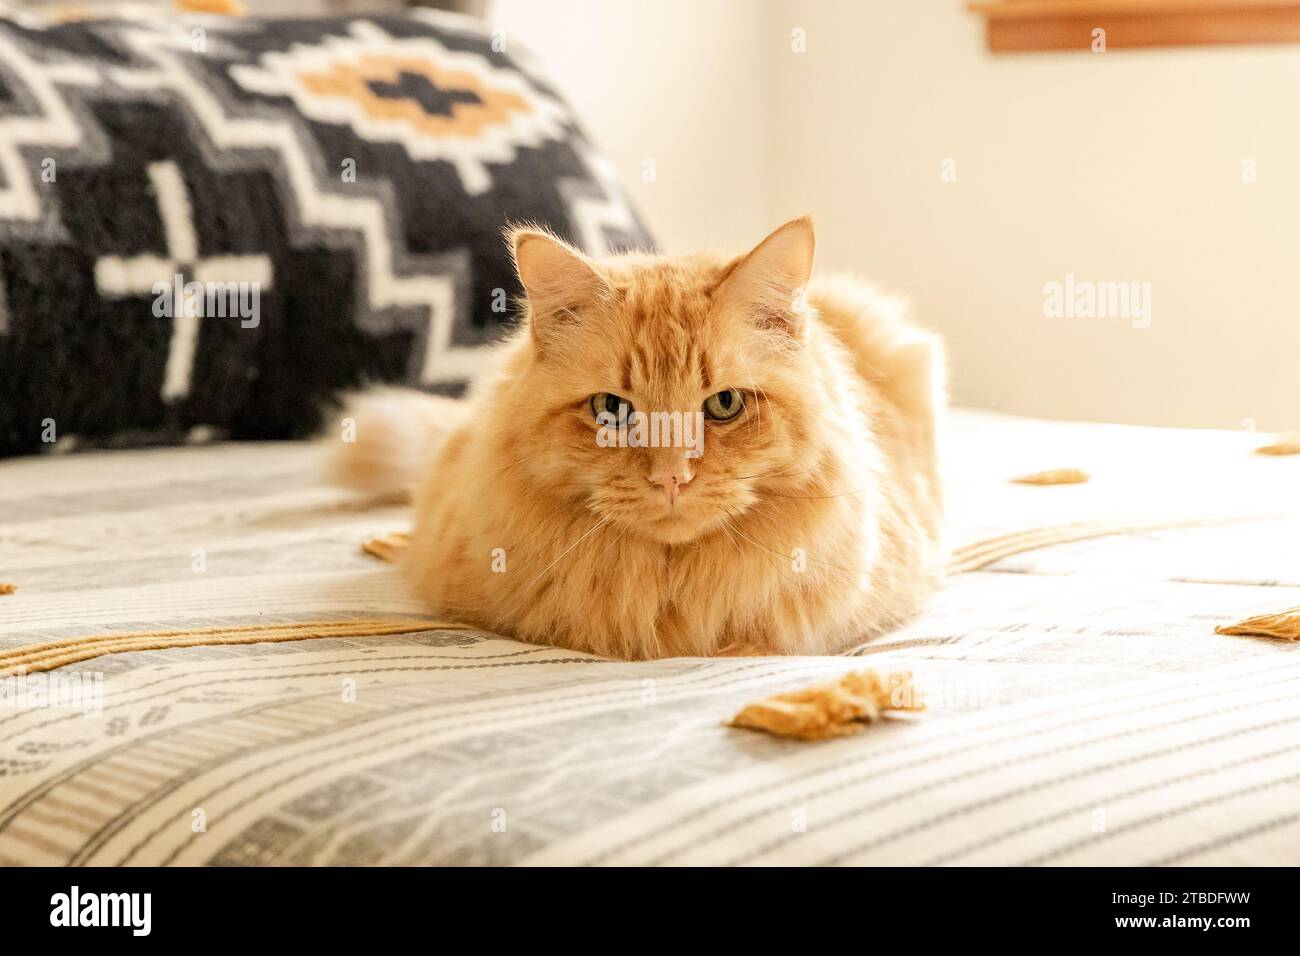 Un chat tabby orange allongé dans une chambre à coucher et regardant la caméra. Banque D'Images